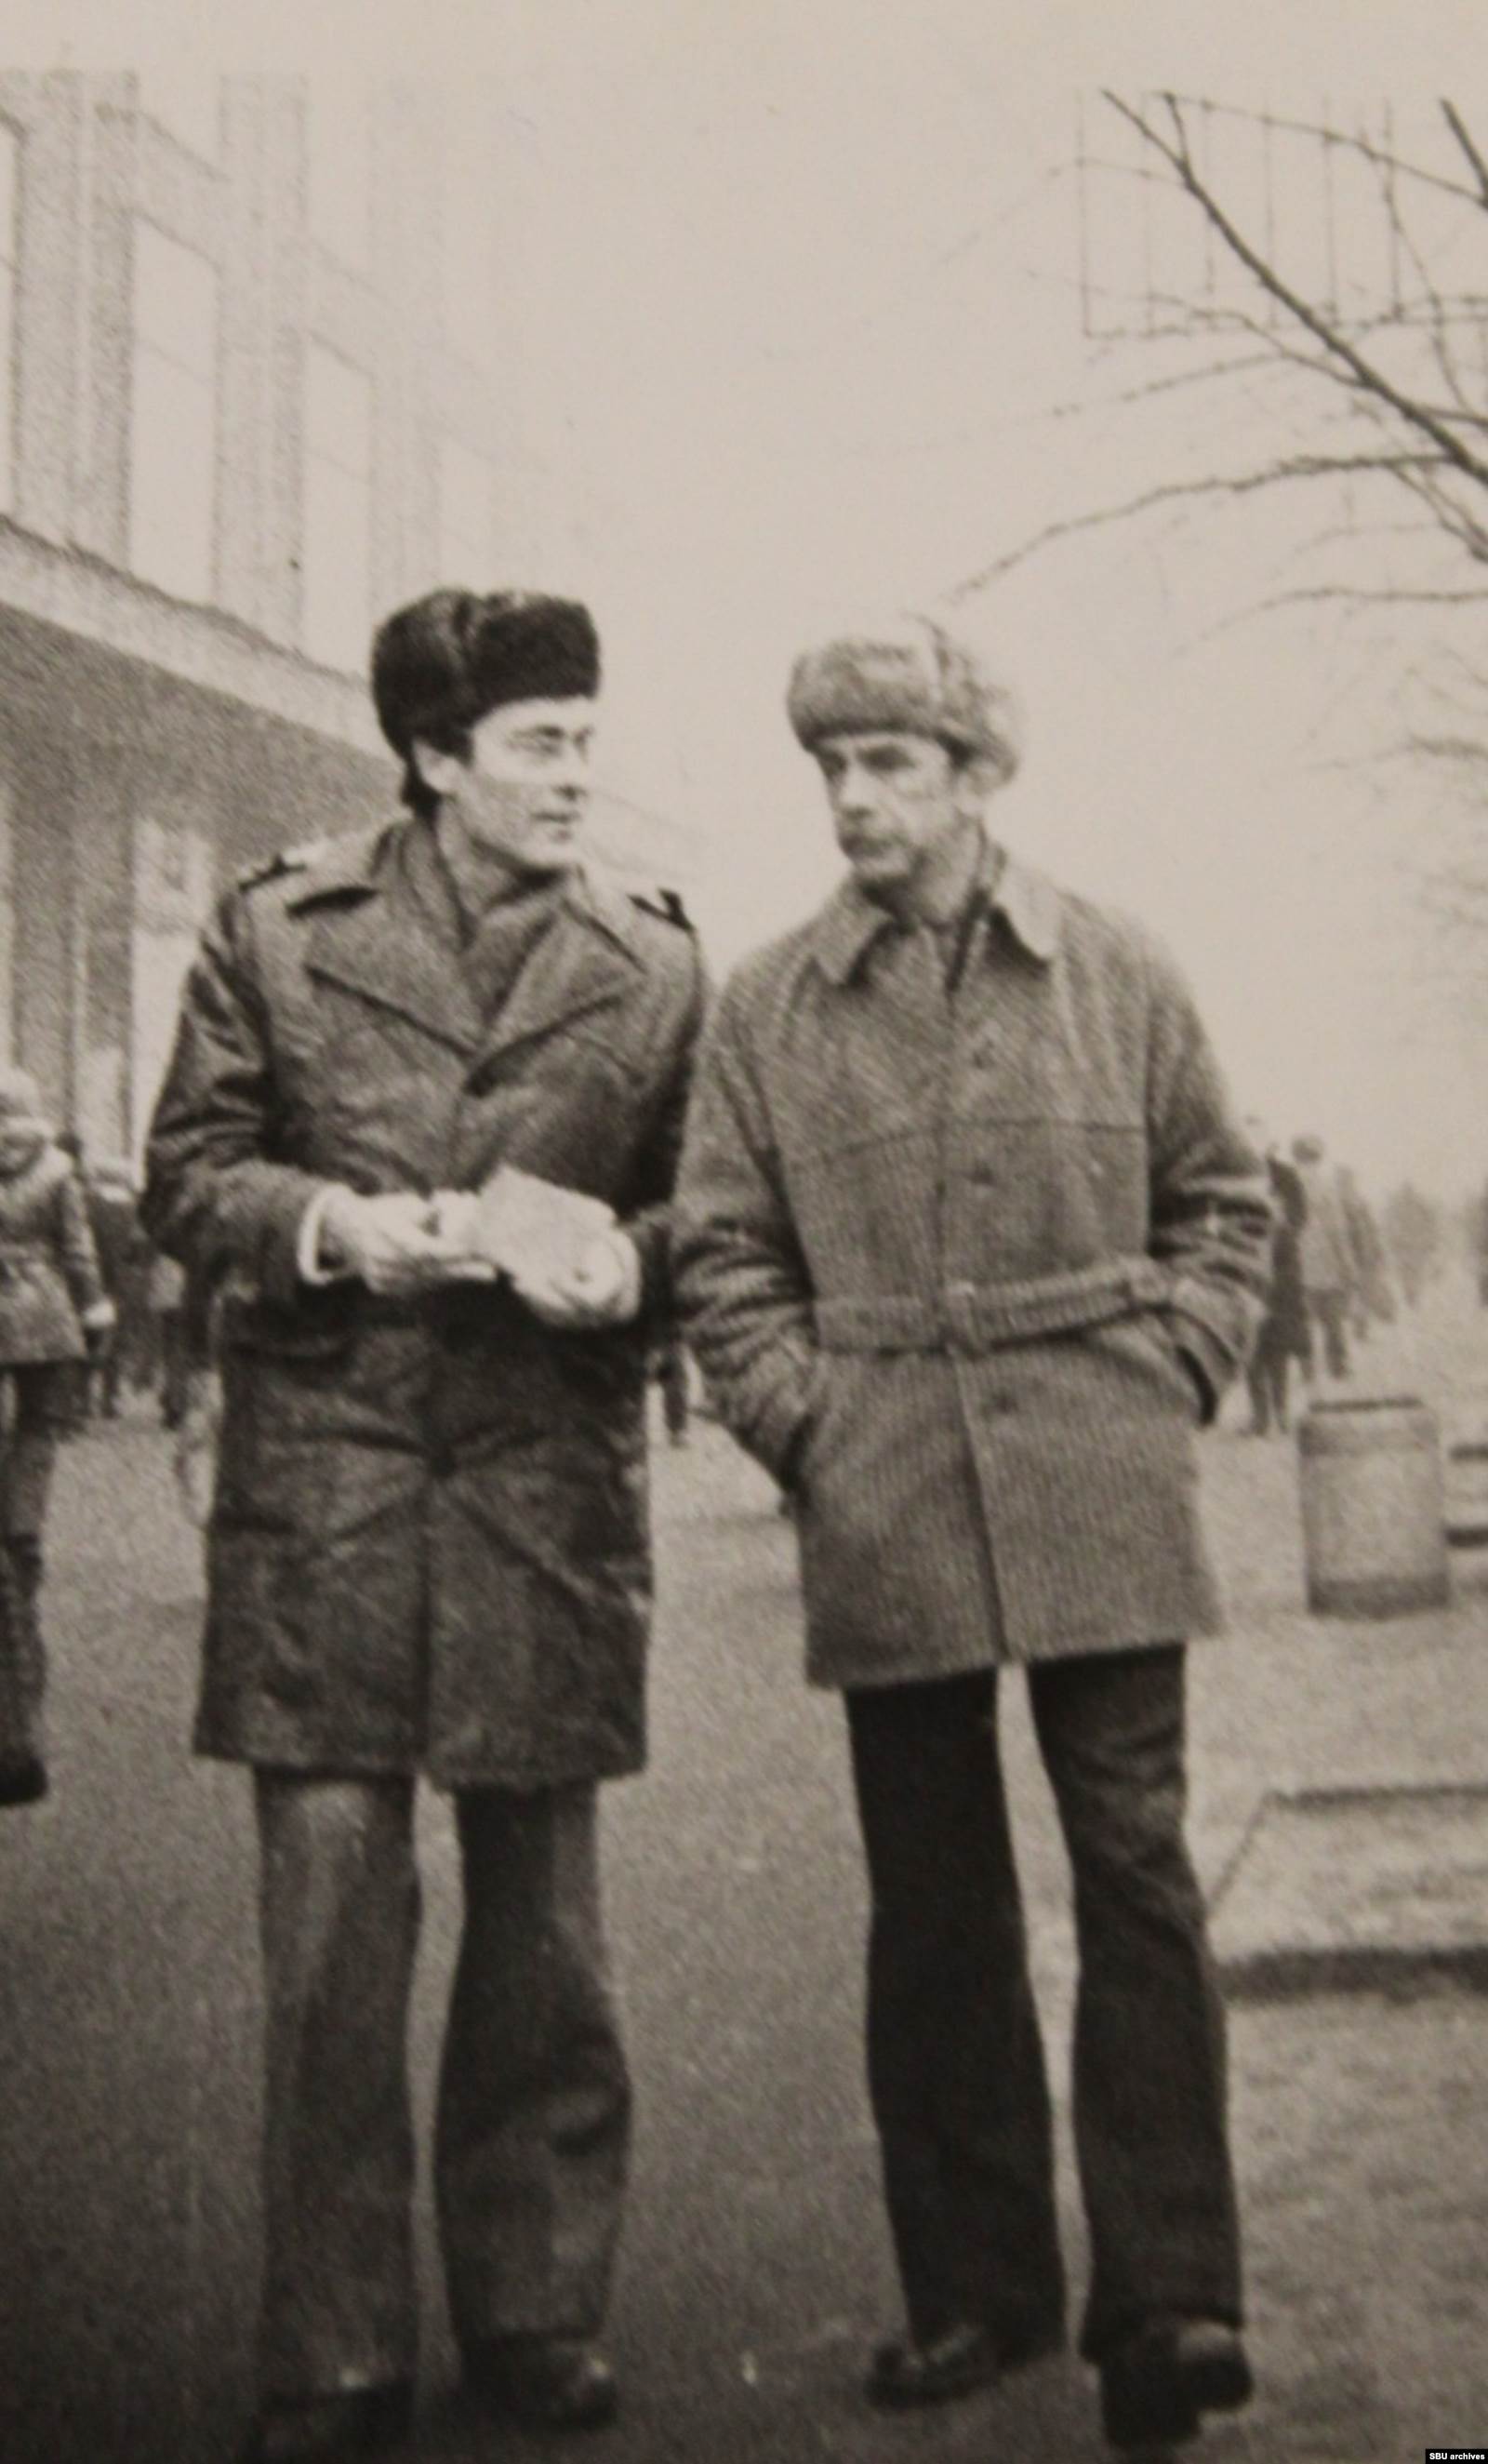  Рудольф Каценбоген со знакомыми. Киев, 1980-1981. Фото КГБ скрытой камерой